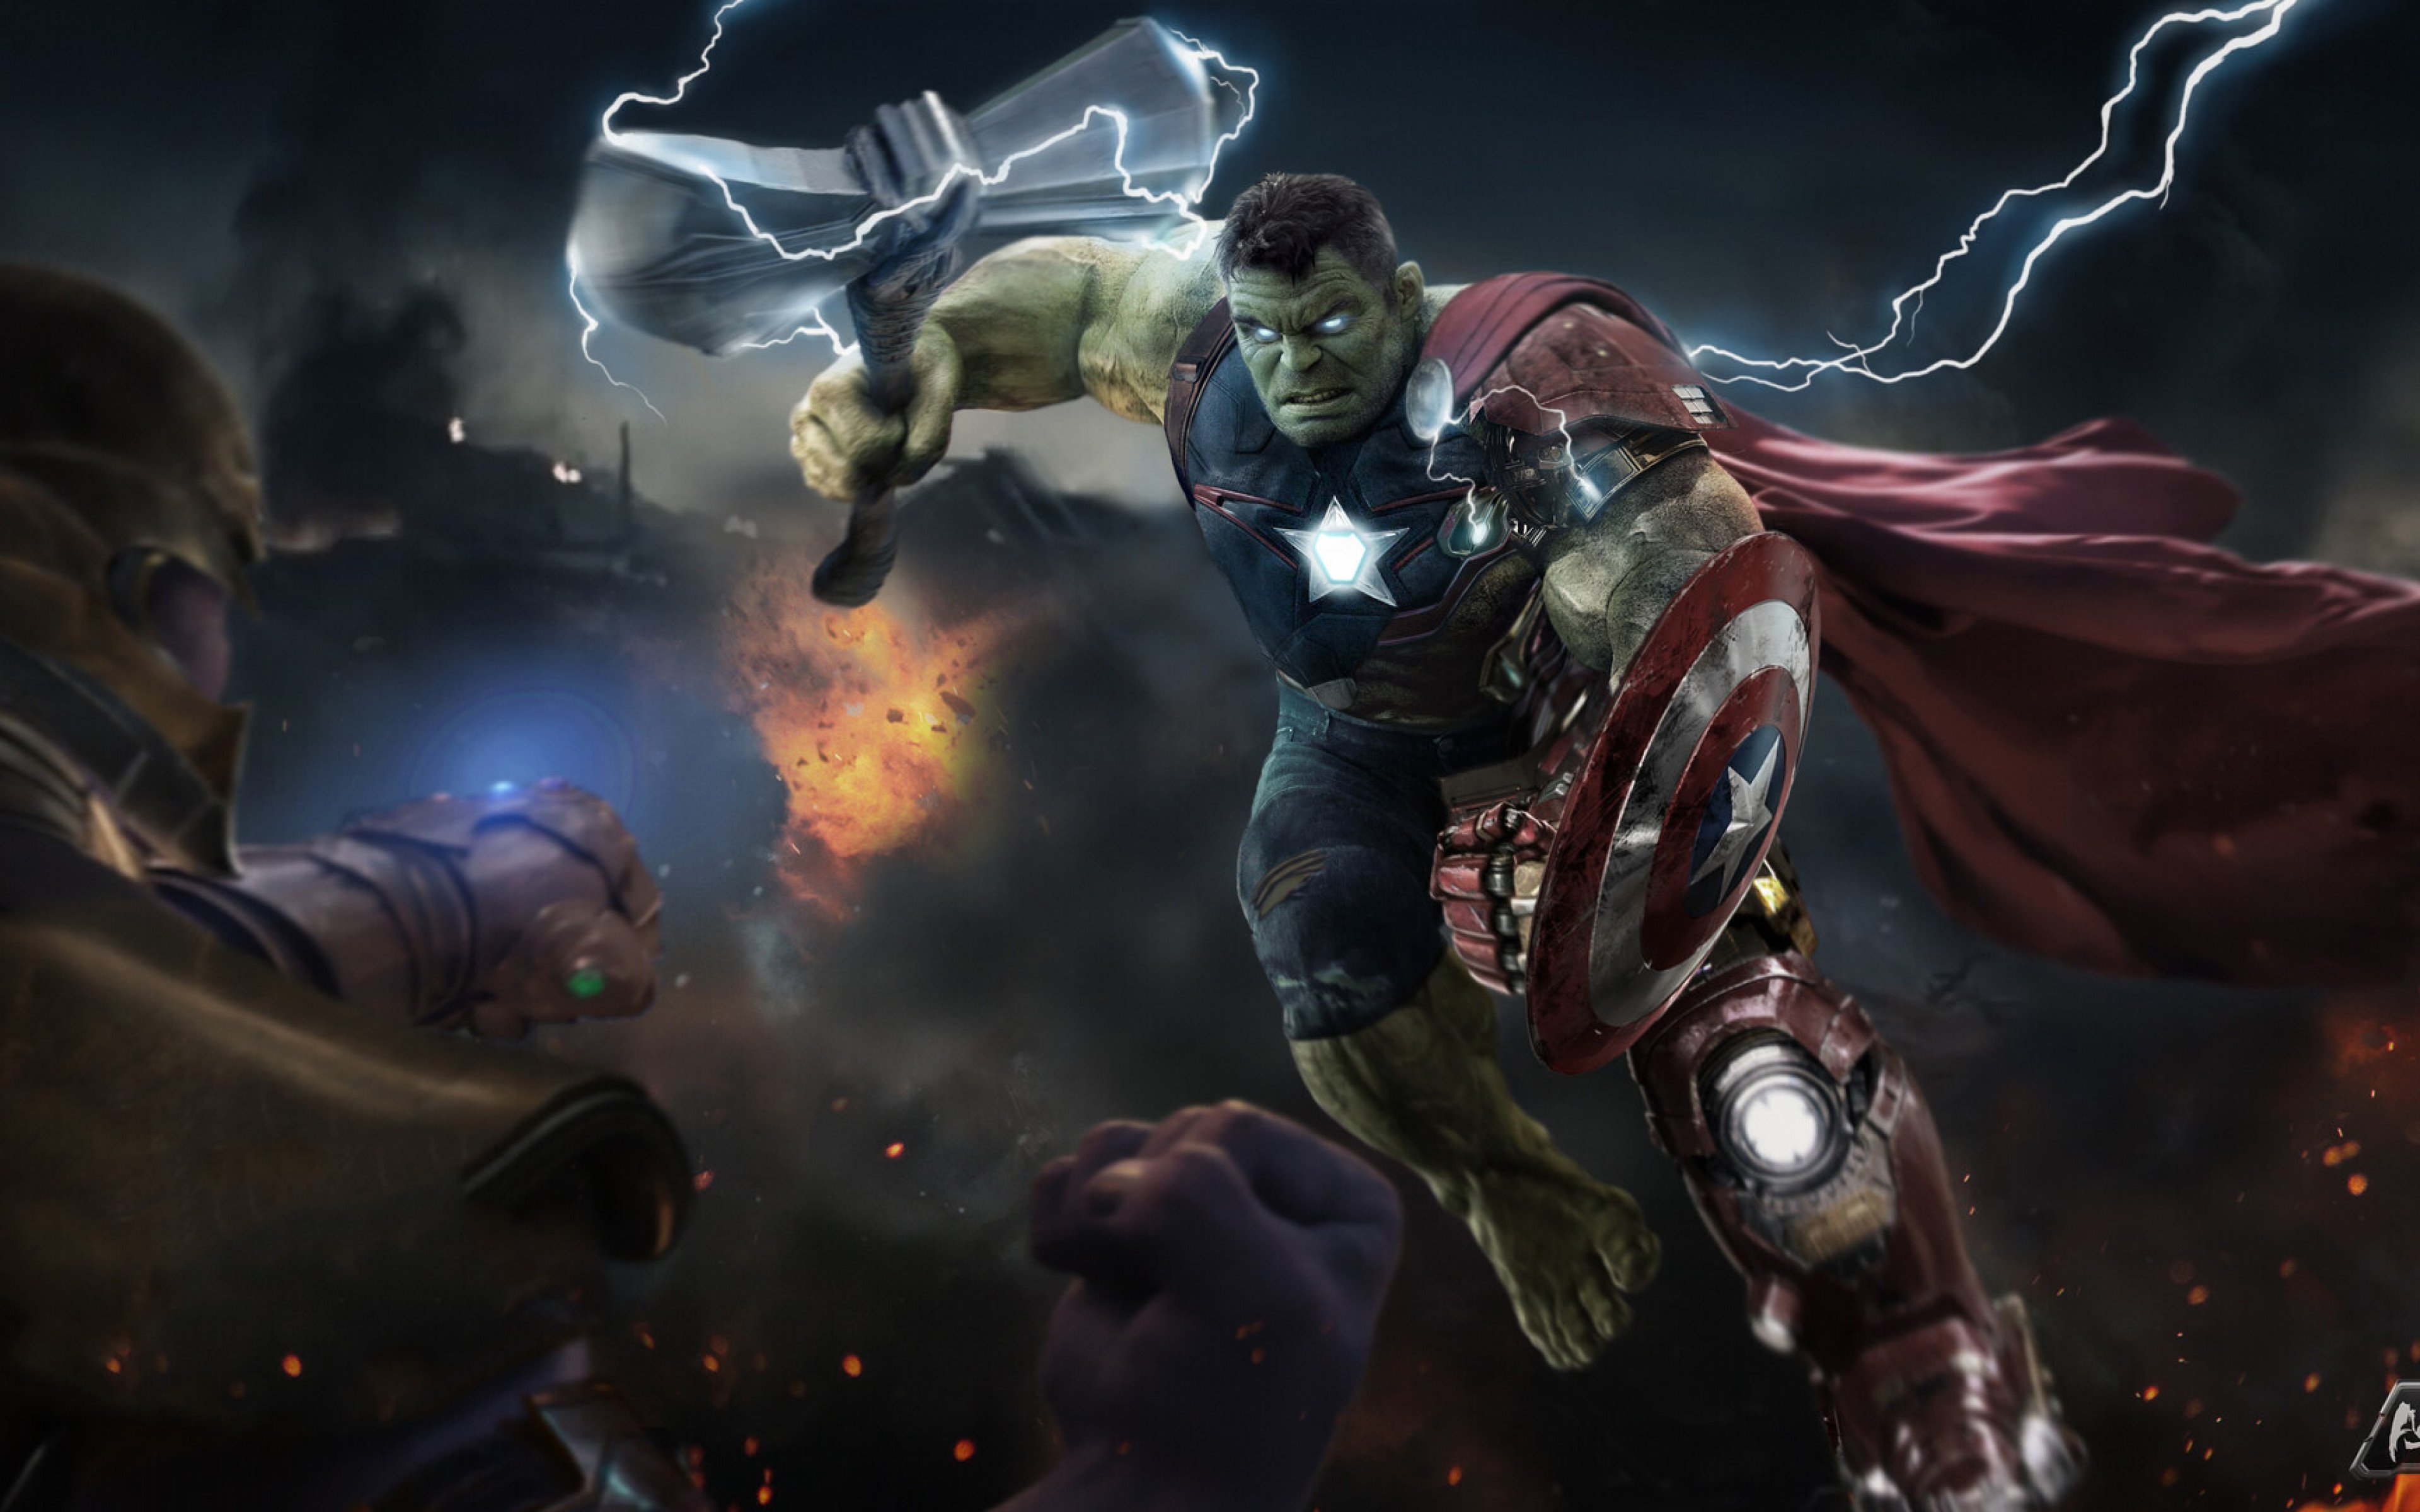 Hulk in Avengers Endgame Wallpaper 4k Ultra HD ID:4759